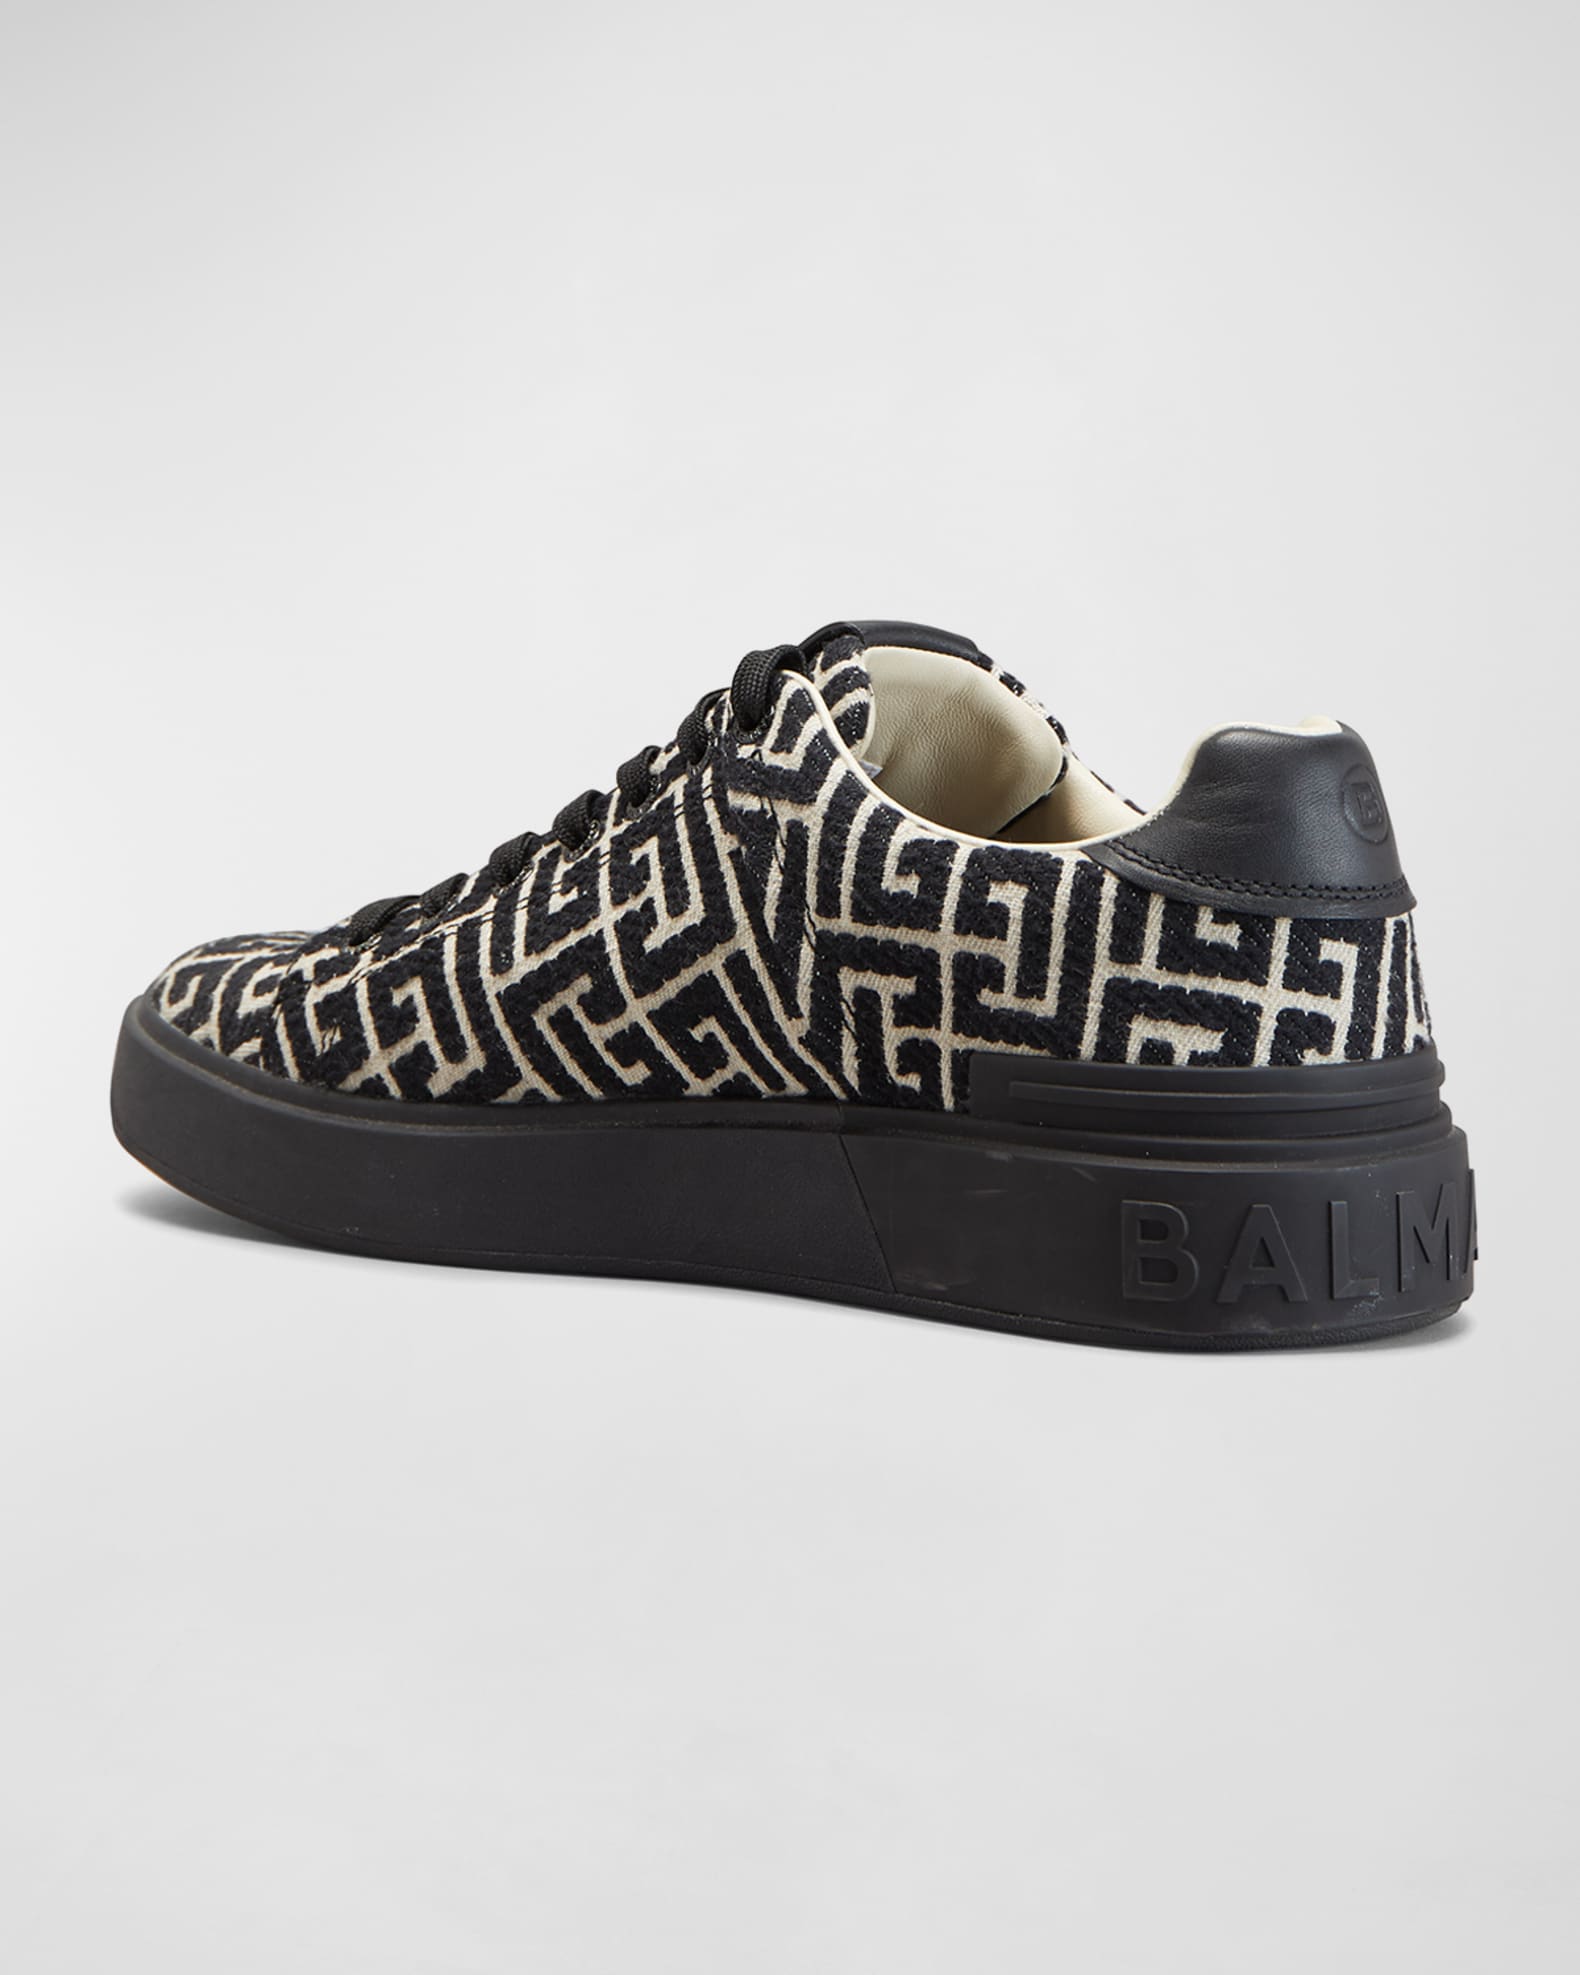 Balmain Men's B-Court Jacquard Monogram Low Top Sneakers | Neiman Marcus